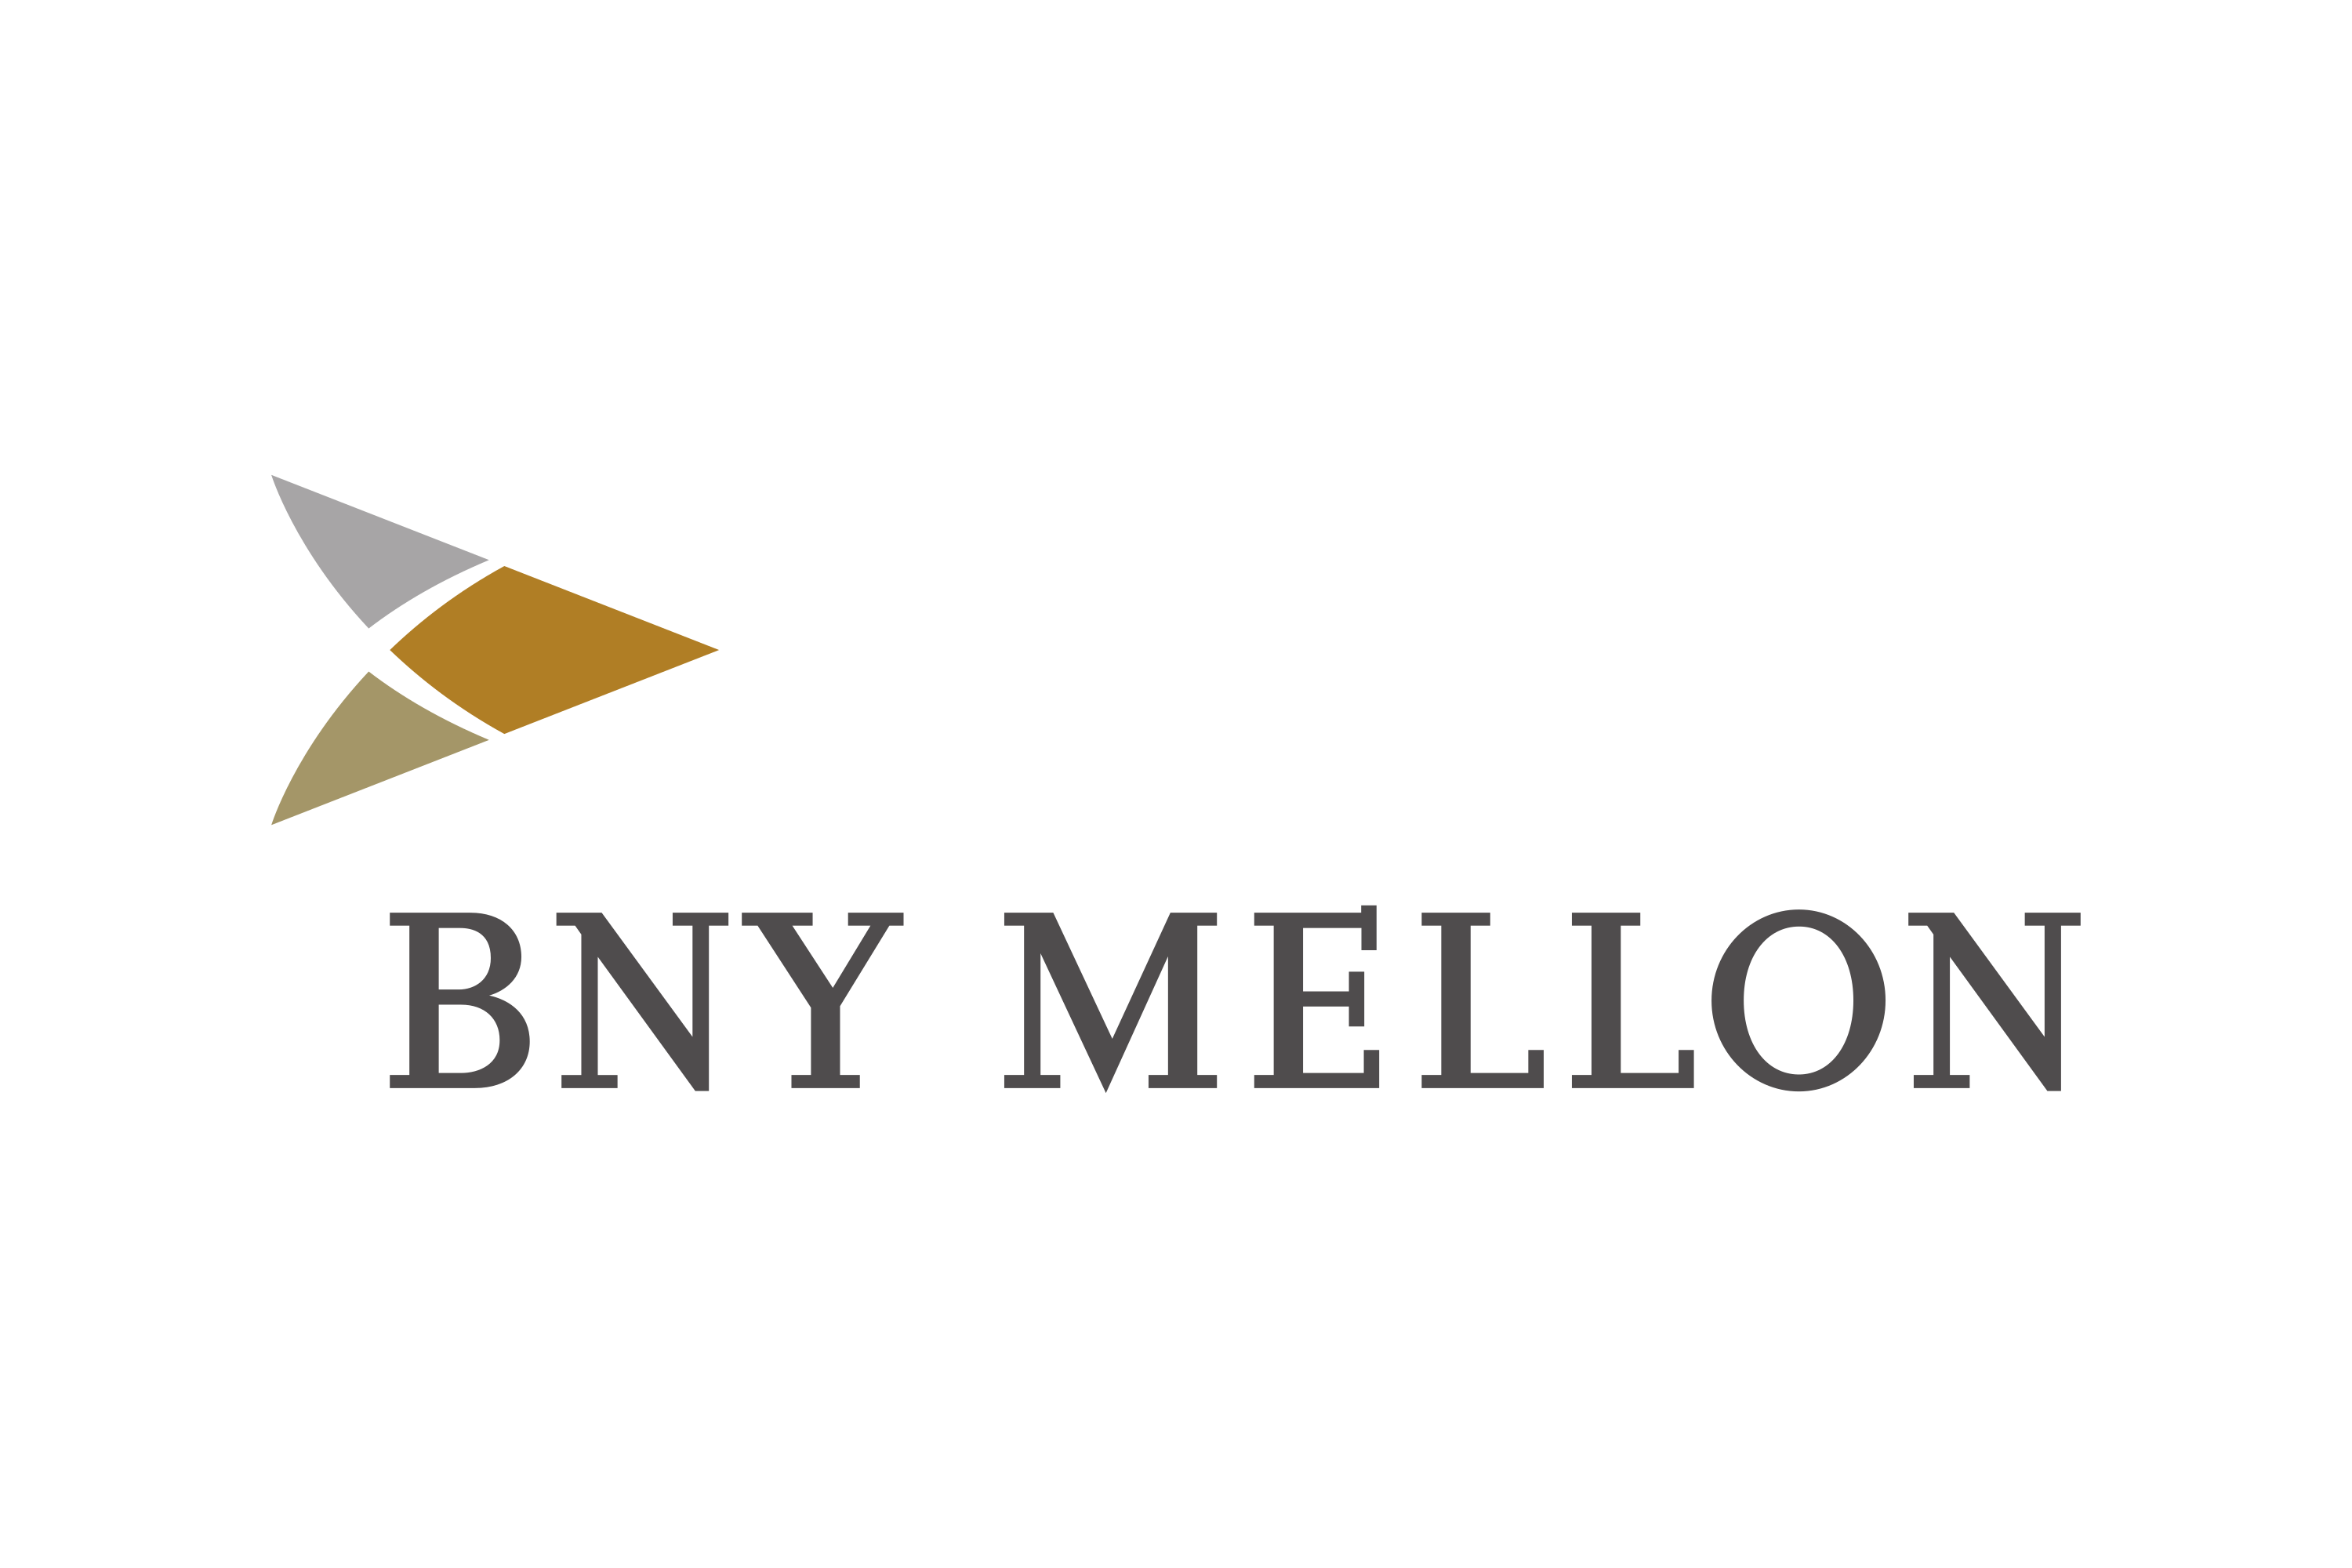 Download The Bank of New York Mellon (BNY Mellon) Logo in SVG Vector or